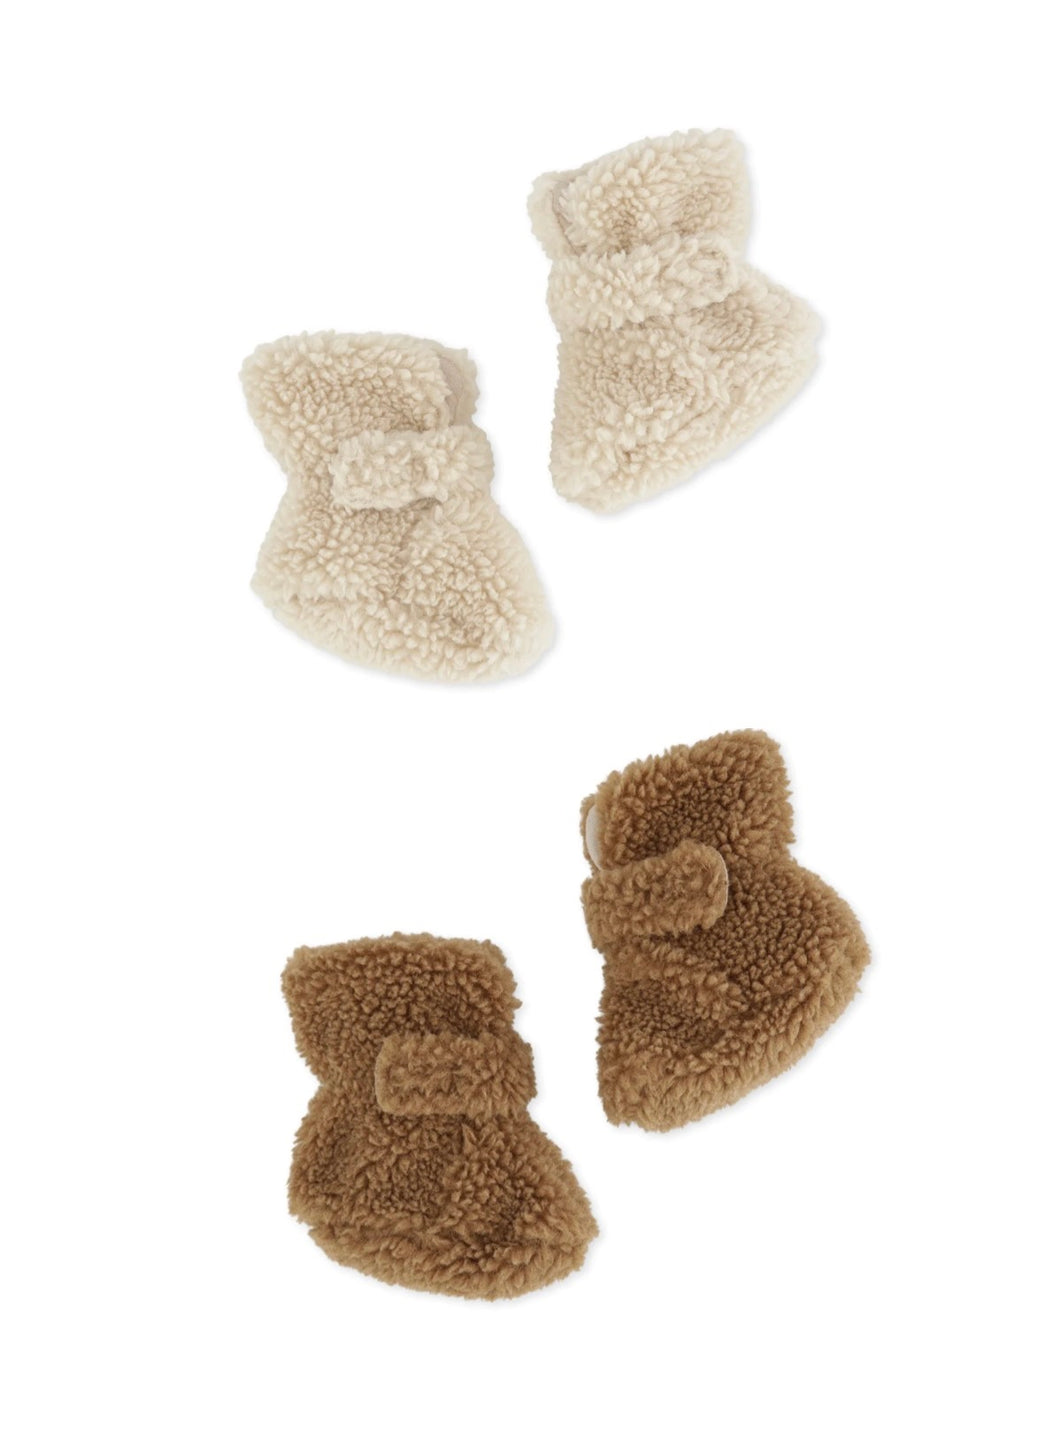 Grizz teddy baby boot / コンゲススロイド ベビーボアブーツ 赤ちゃん靴